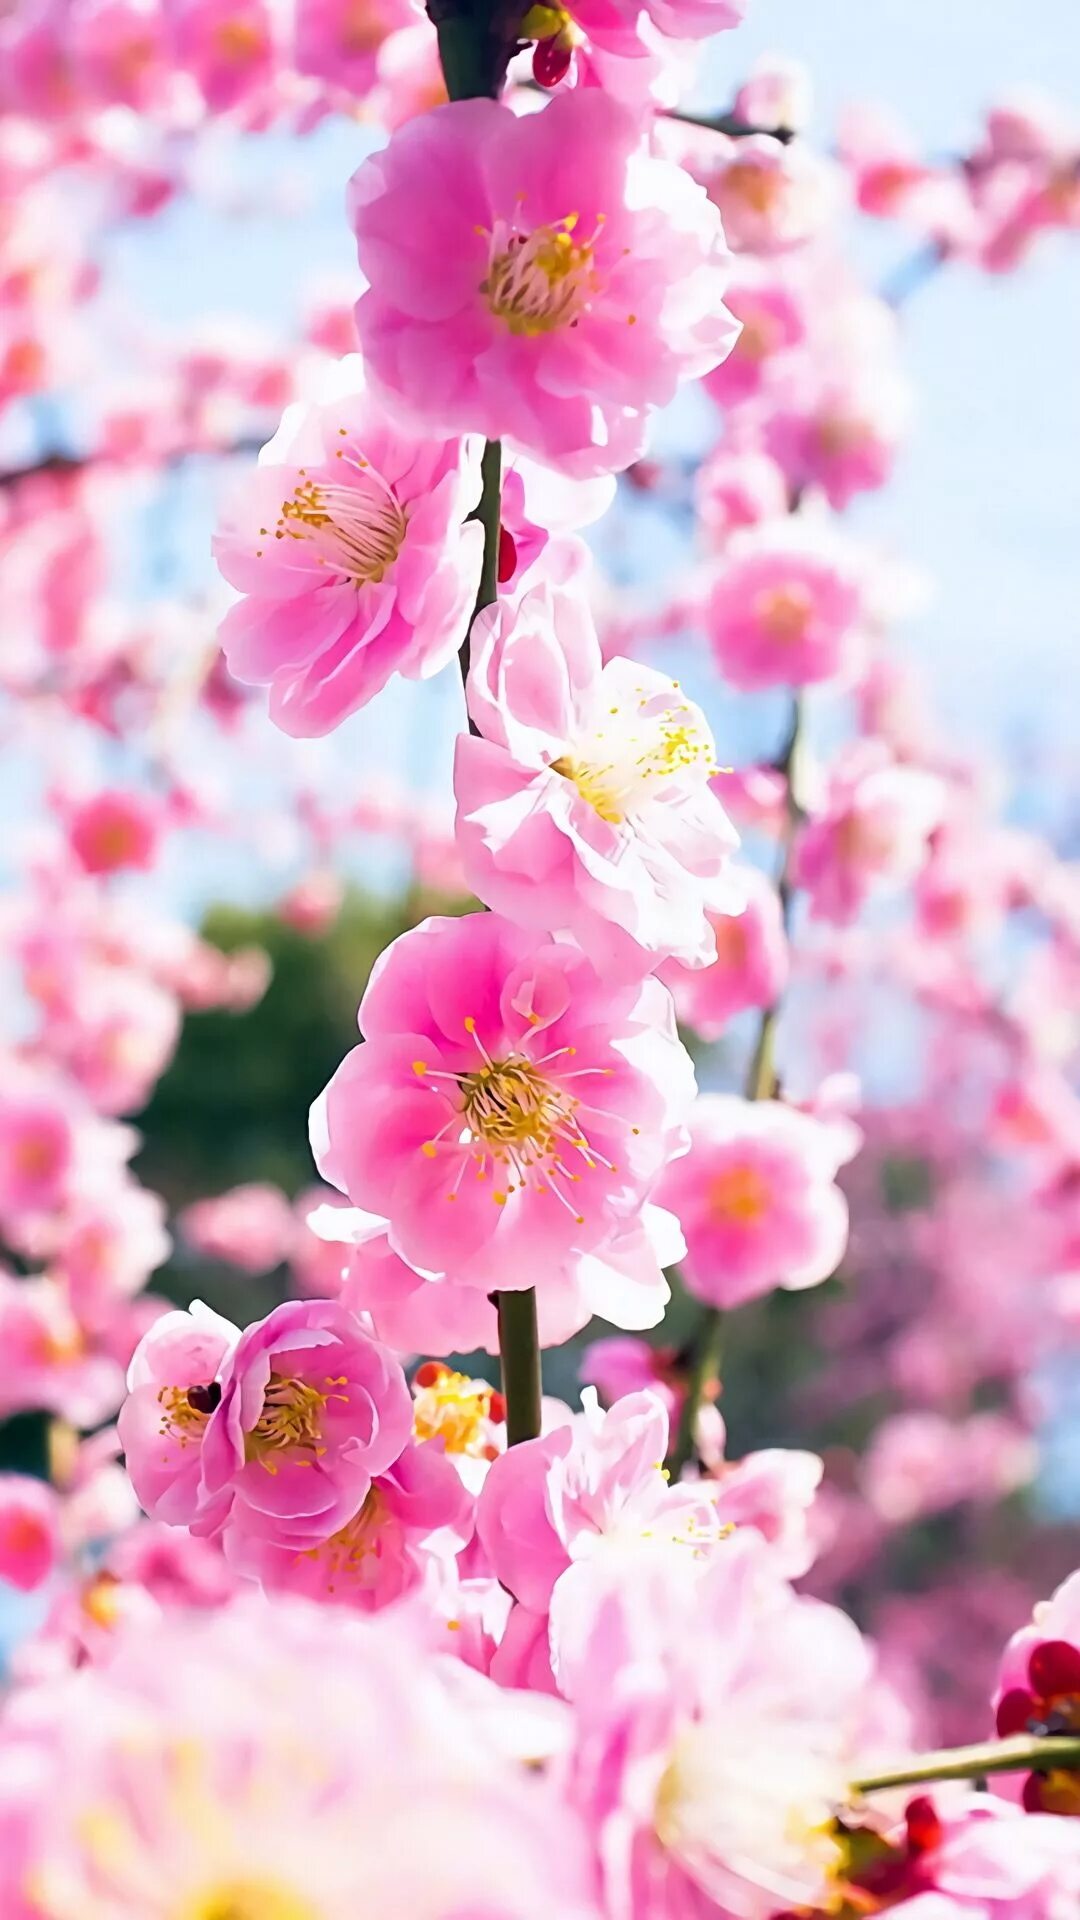 Заставки на телефон вертикальные цветы. Цветы вертикальные. Заставка на телефон цветы. Розовые весенние цветочки.